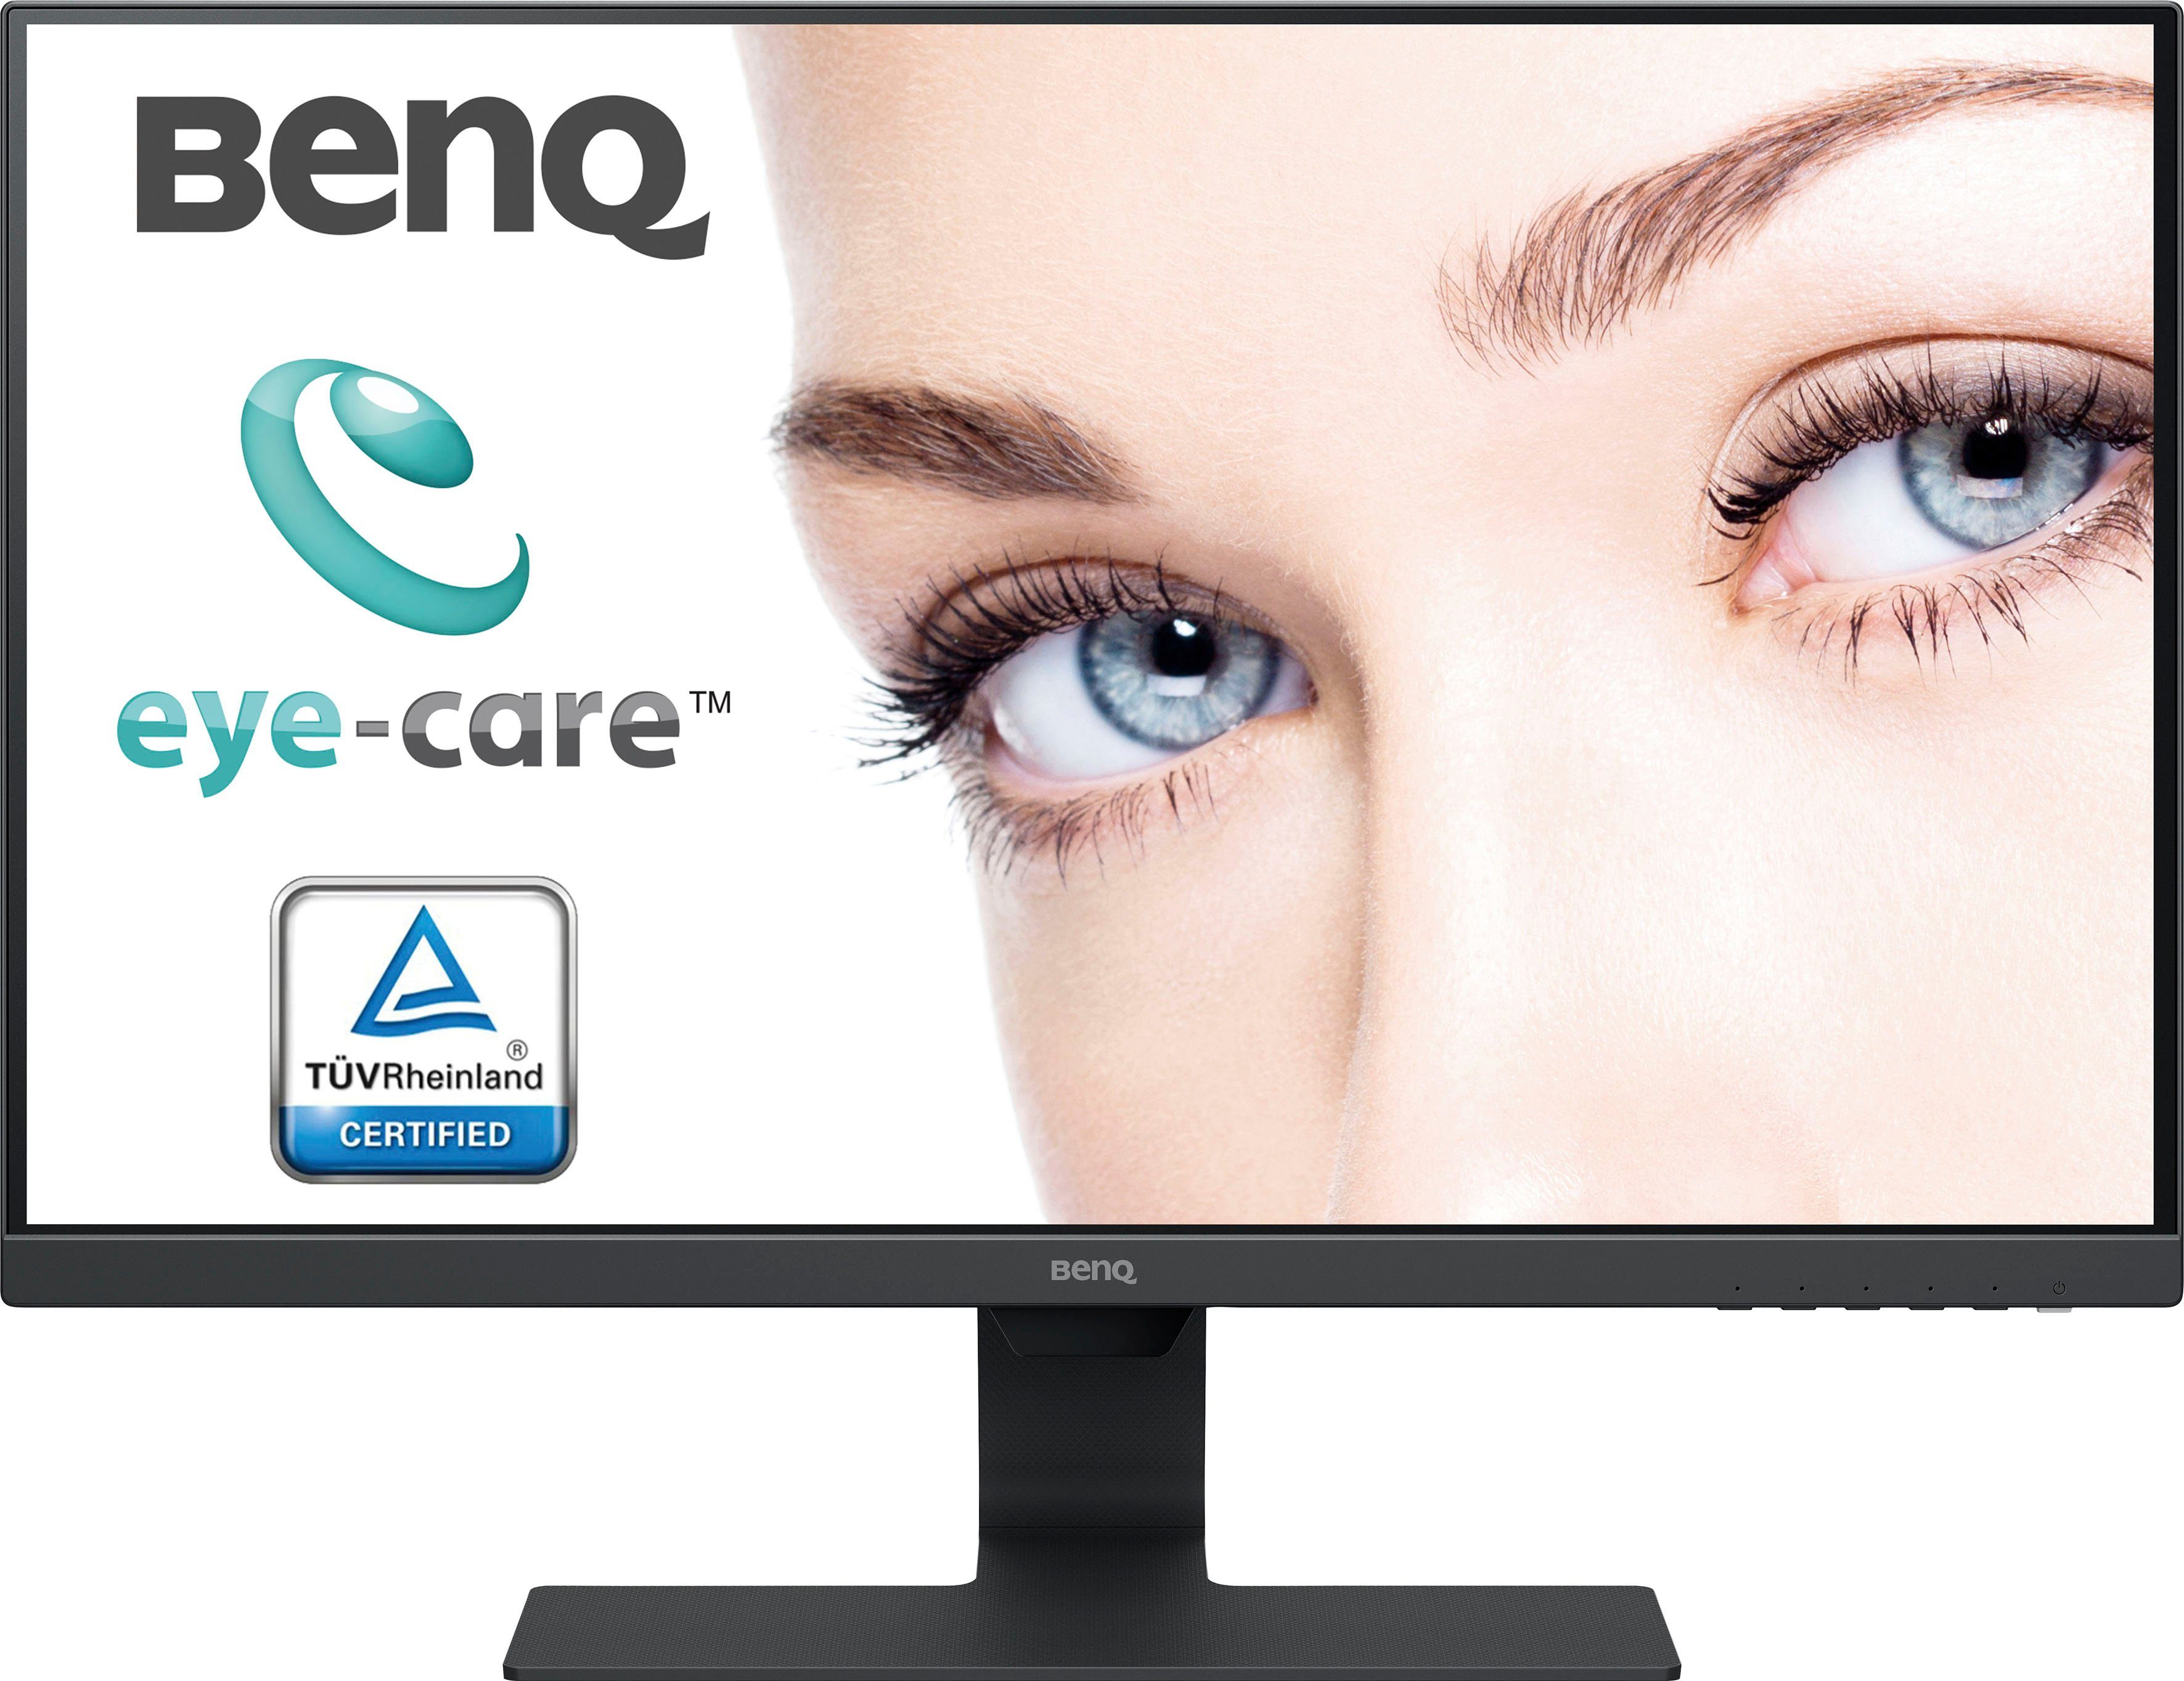 BenQ Monitore online kaufen » BenQ Bildschirme | OTTO | Monitore & Bildschirme